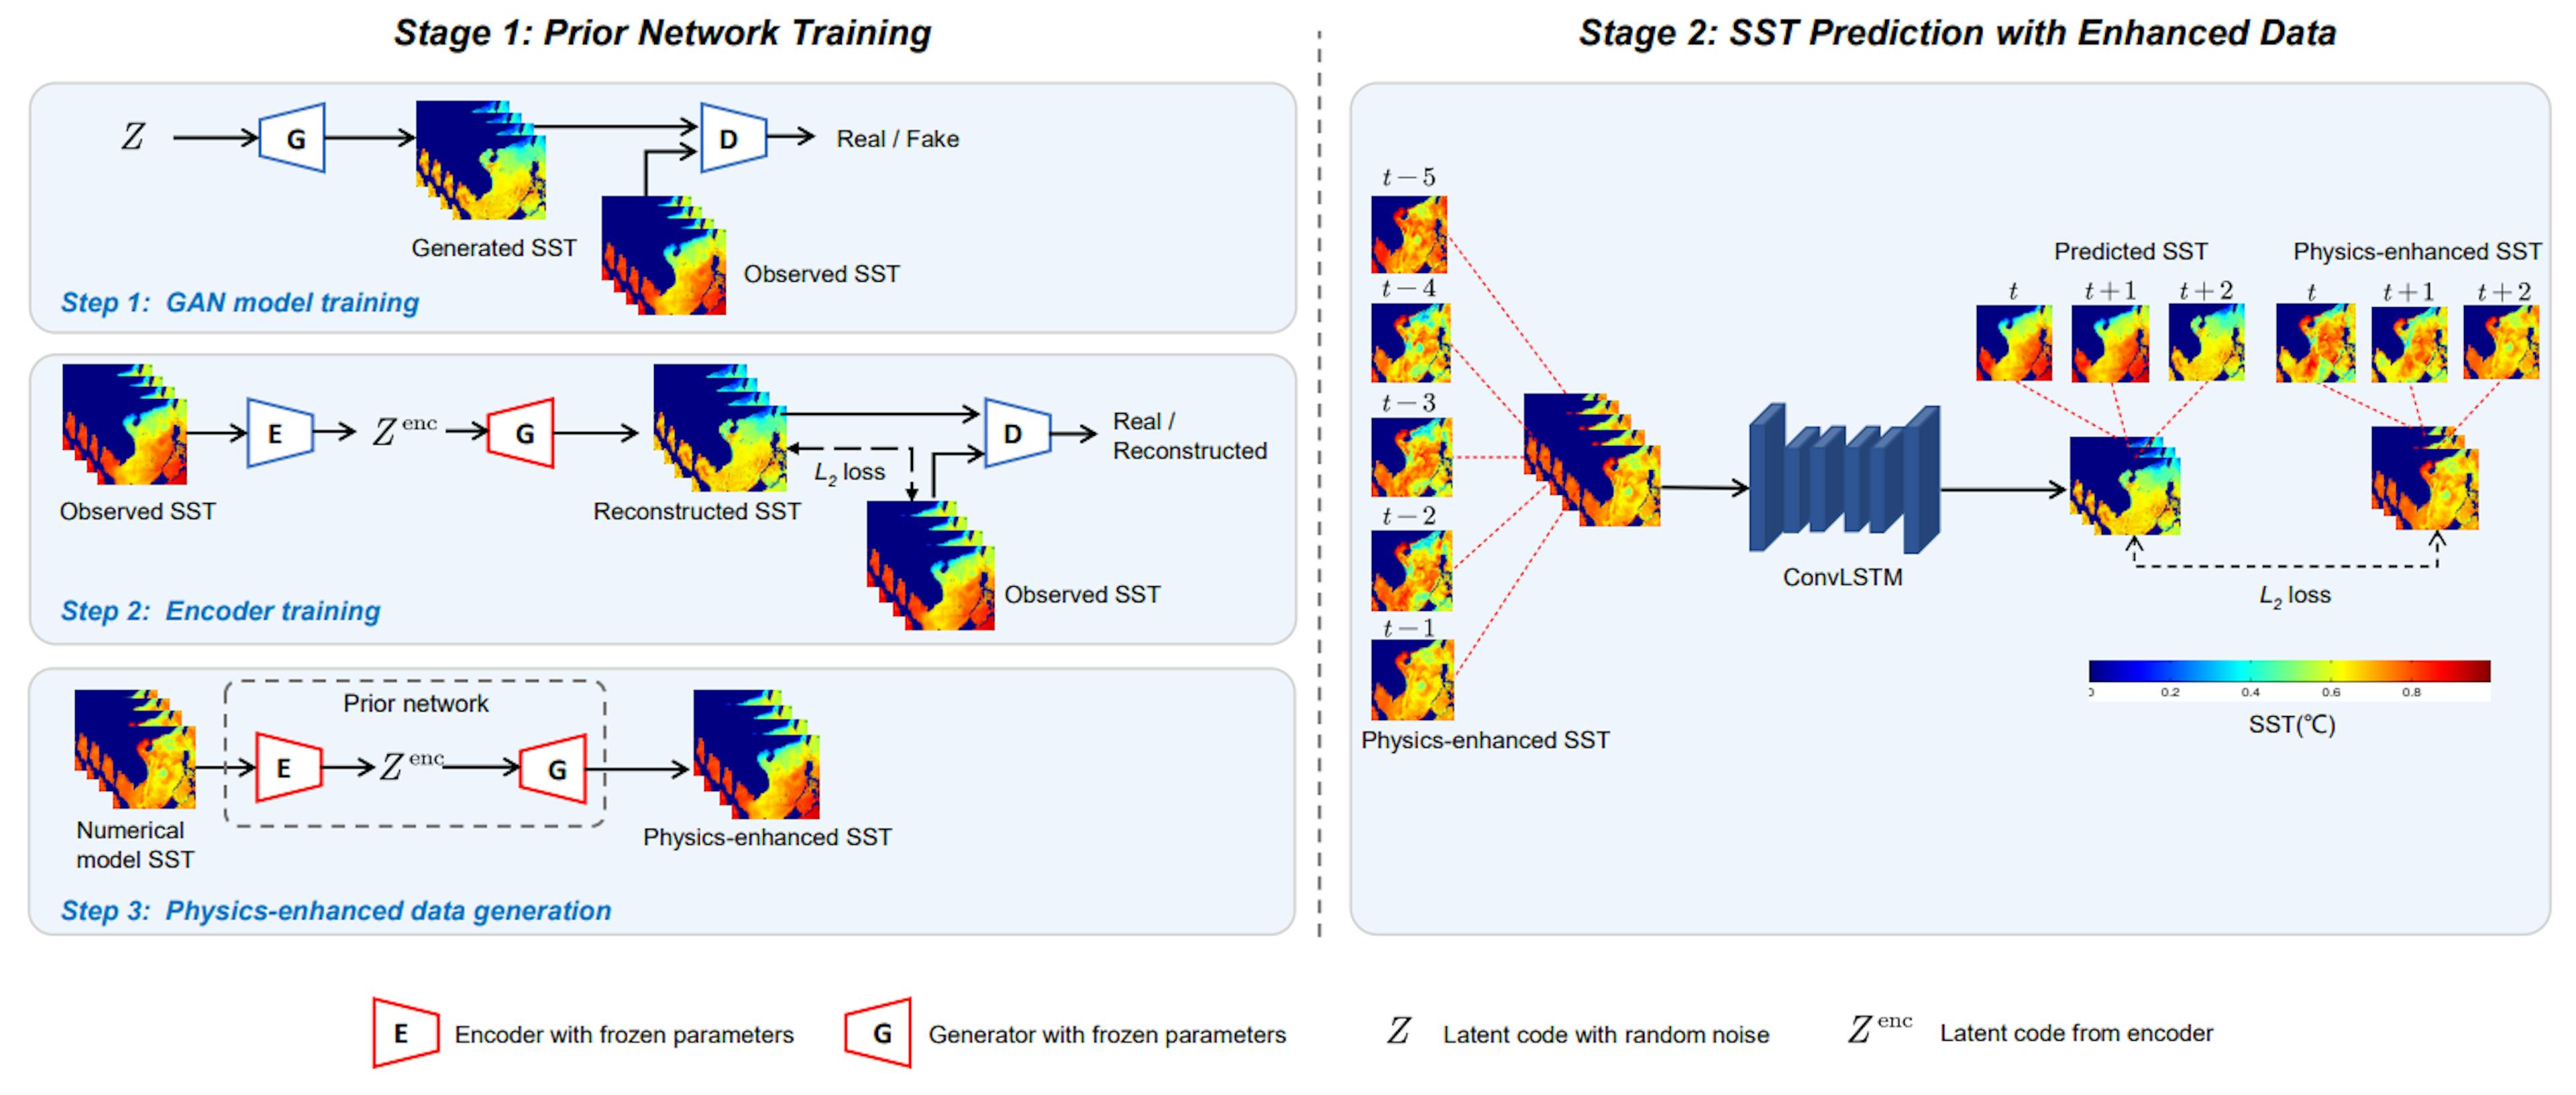 그림 2. 제안된 SST 예측 방법의 예시. 이는 사전 네트워크 훈련과 향상된 데이터를 통한 SST 예측의 두 단계로 구성됩니다. 첫 번째 단계에서는 물리적으로 강화된 SST를 생성하도록 이전 네트워크를 훈련합니다. 두 번째 단계에서는 물리학이 강화된 SST가 ConvLSTM을 통한 SST 예측에 사용됩니다.